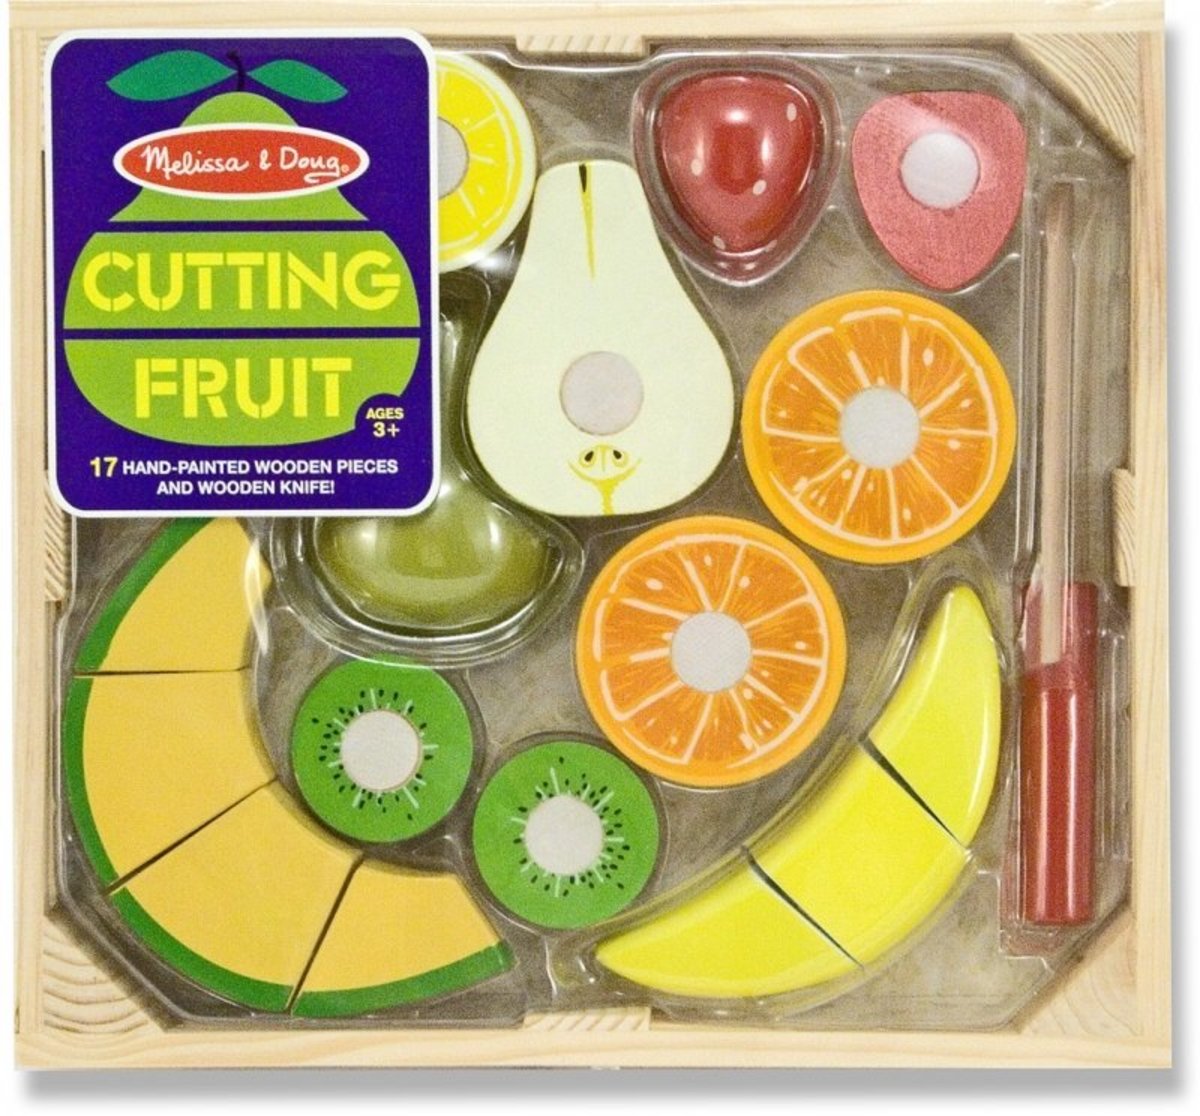 melissa & doug cutting fruit set